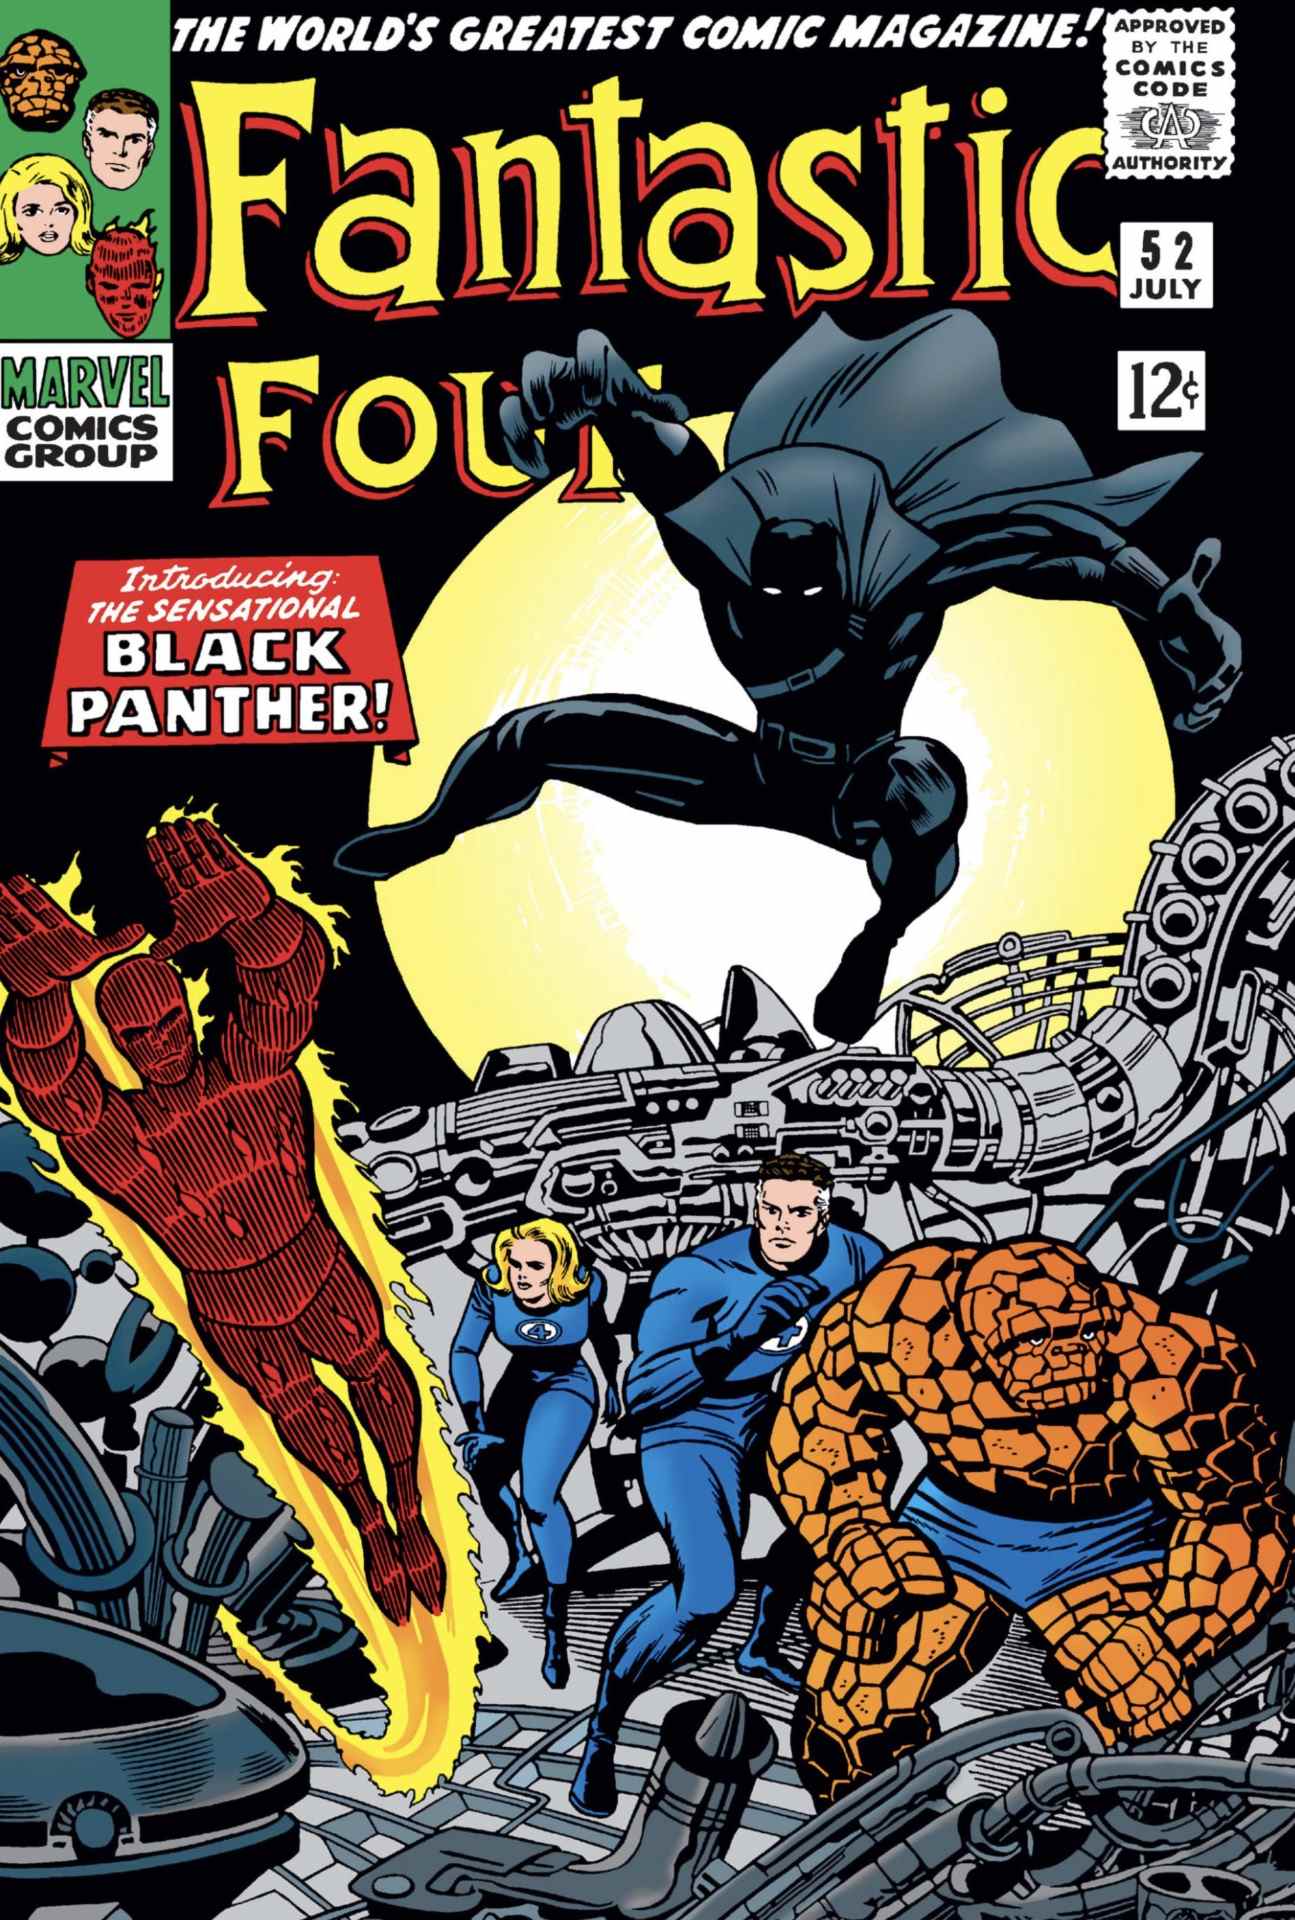 Panthère noire dans Marvel Comics